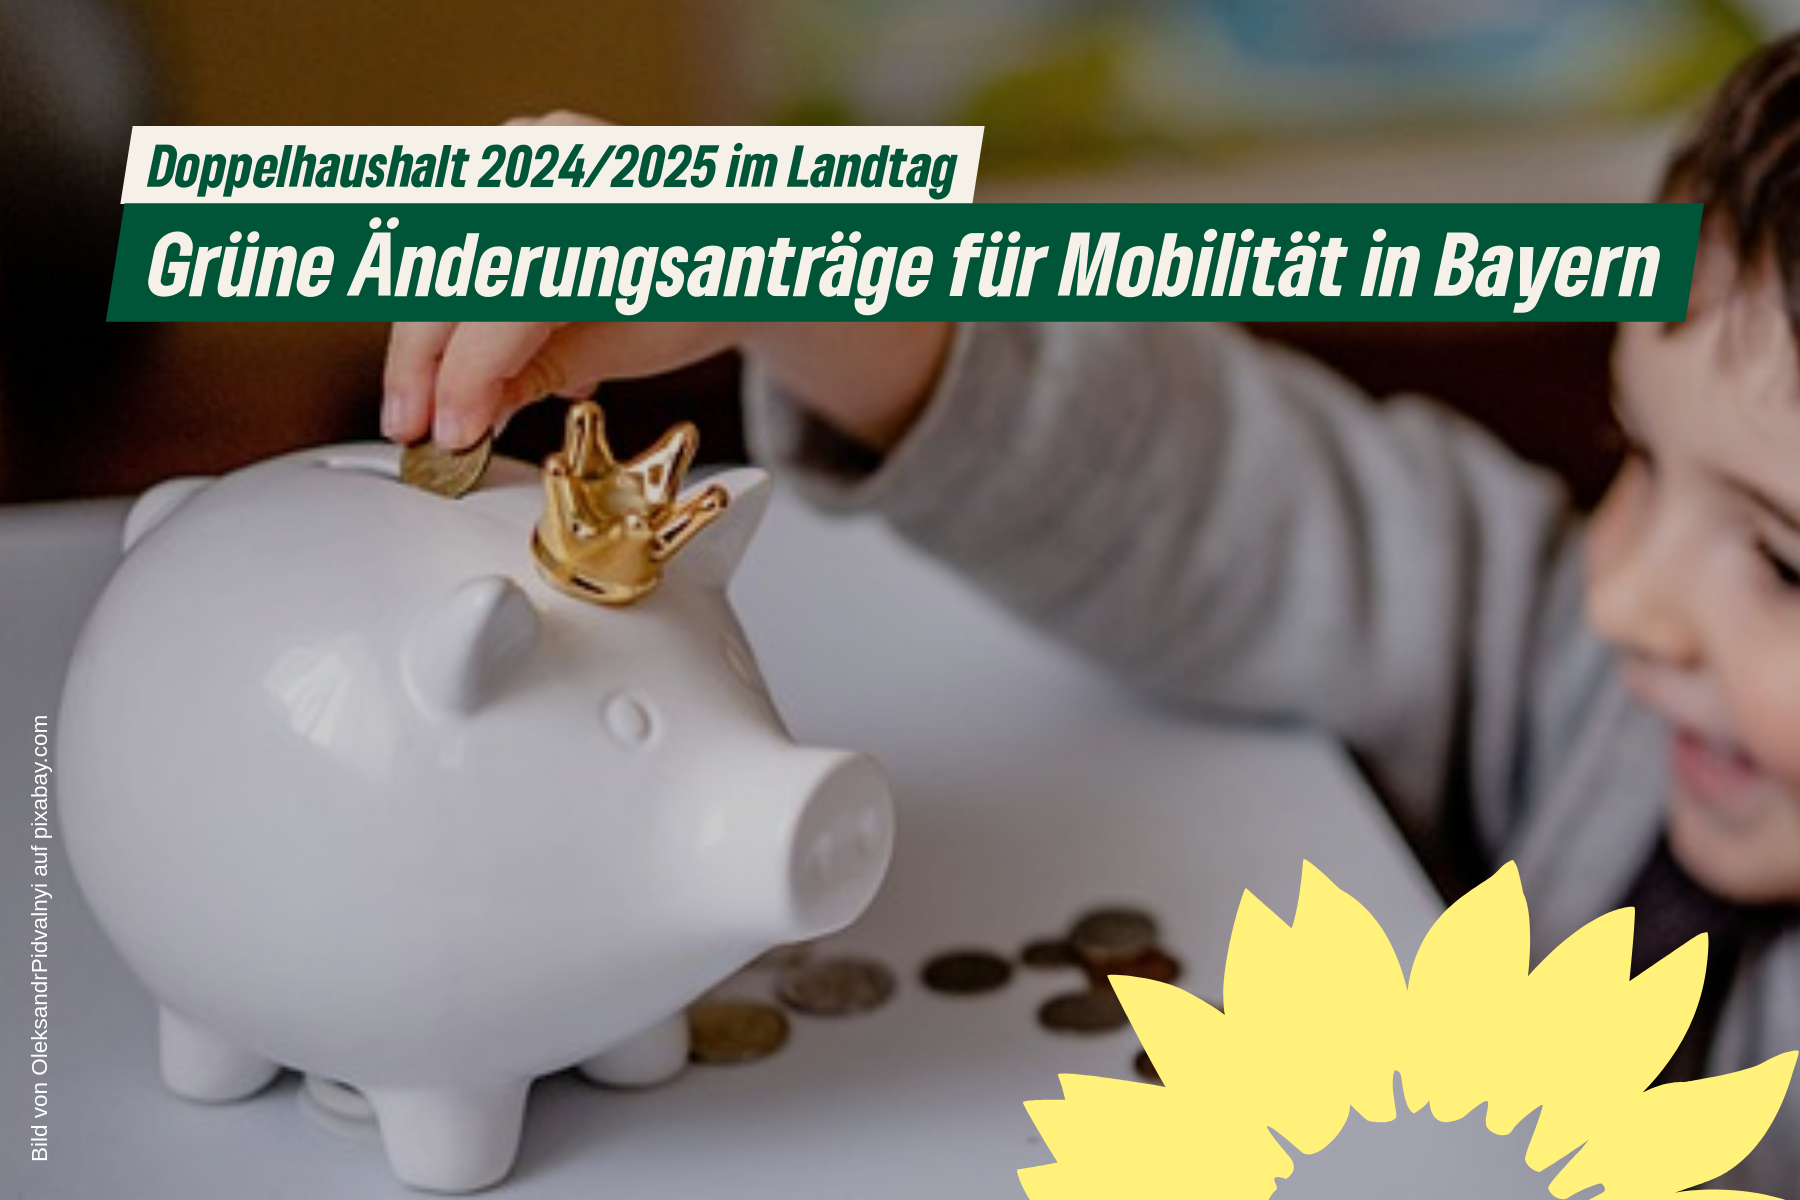 Kind füttert Sparschwein auf Tisch mit Kleingeld. Text: Doppelhaushalt 2024/2025 im Landtag: Grüne Änderungsanträge für Mobilität in Bayern